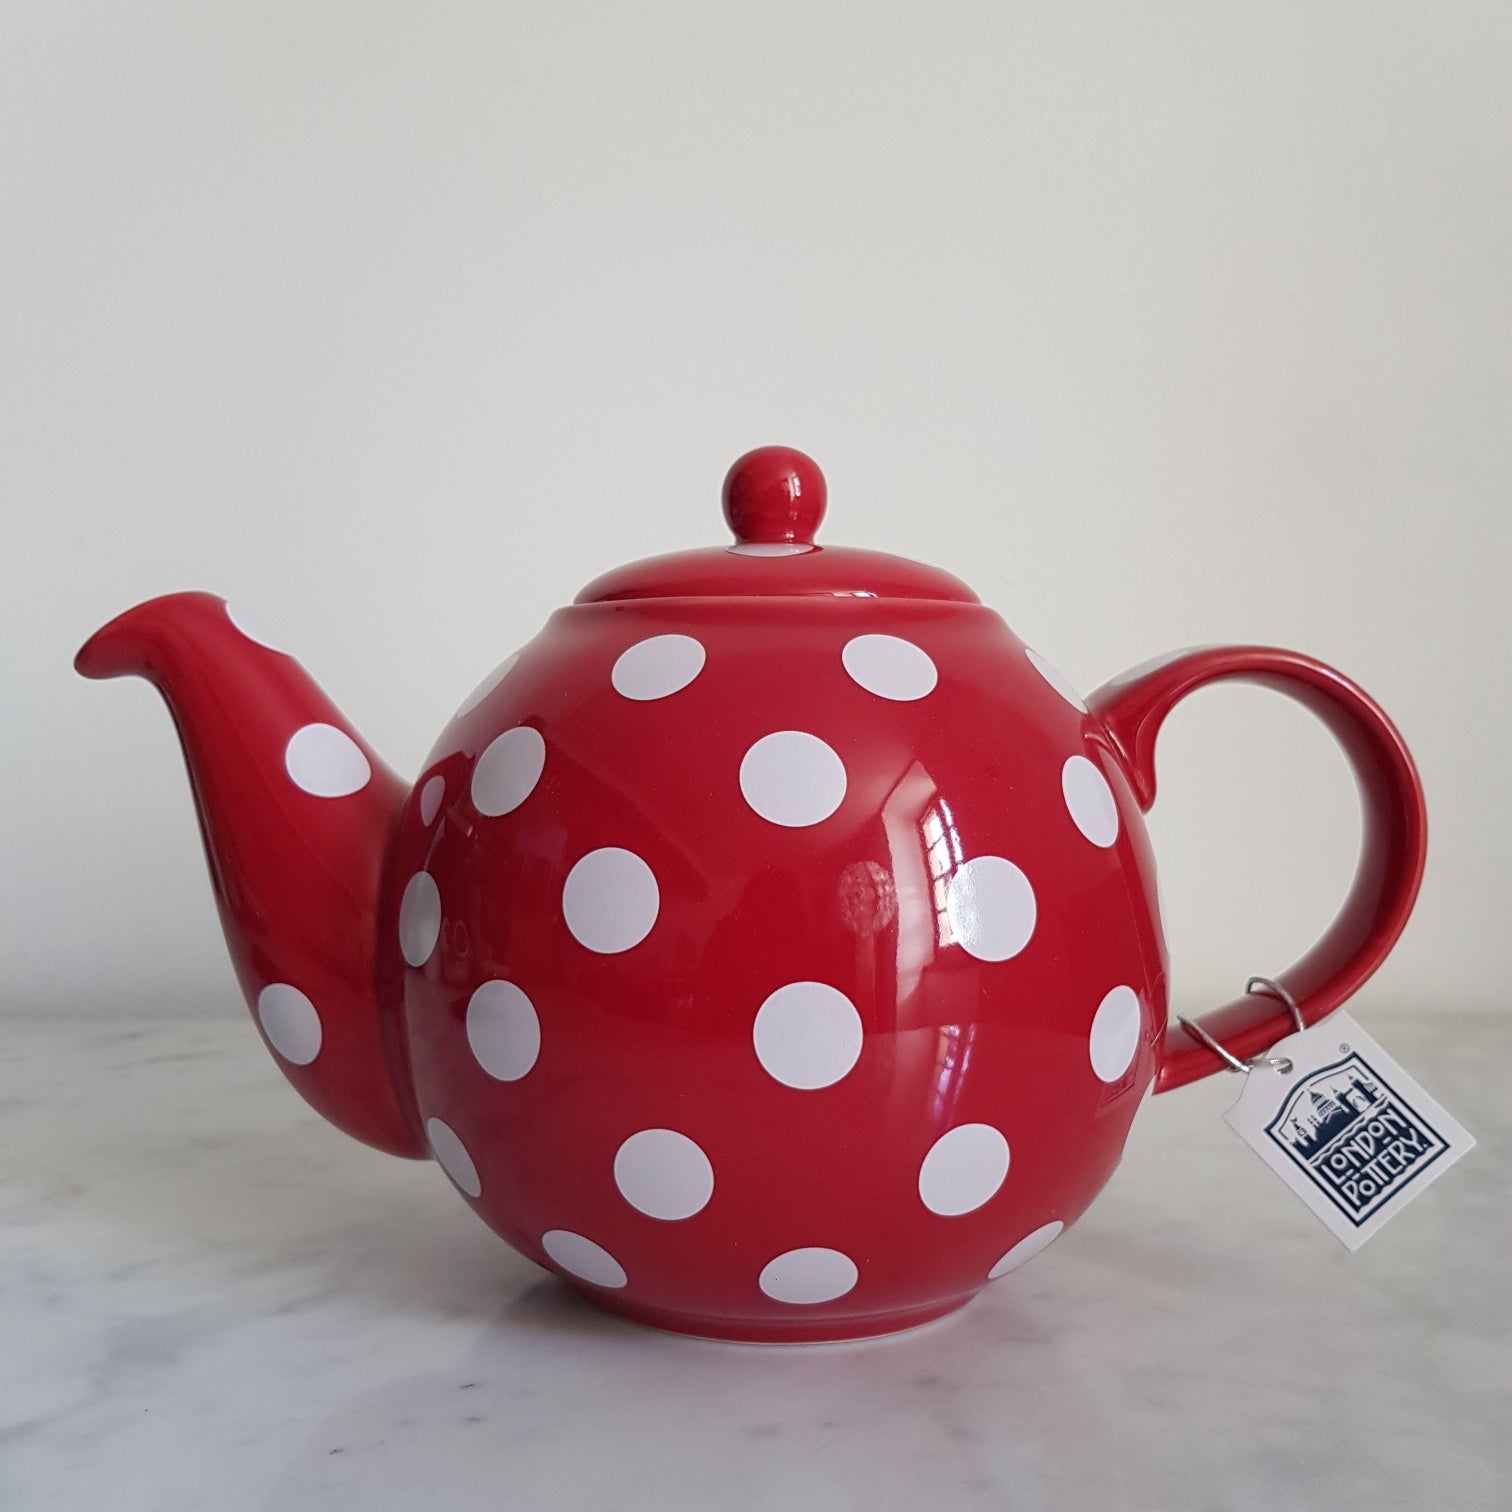 Angliškas raudonas arbatinukas su baltais taškeliais Londono keramika 1,2 l